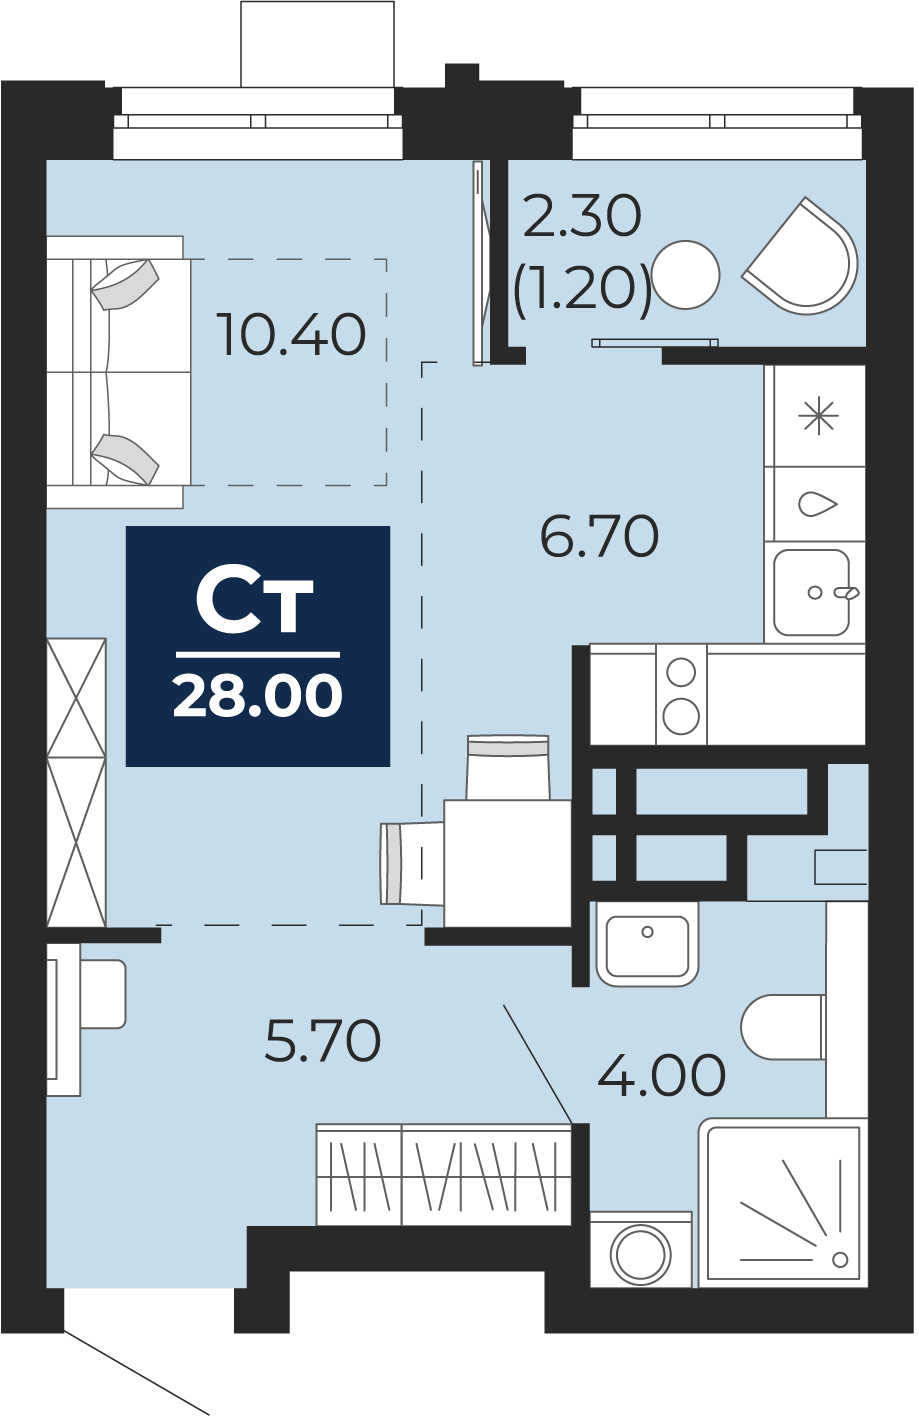 Квартира № 163, Студия, 28 кв. м, 11 этаж